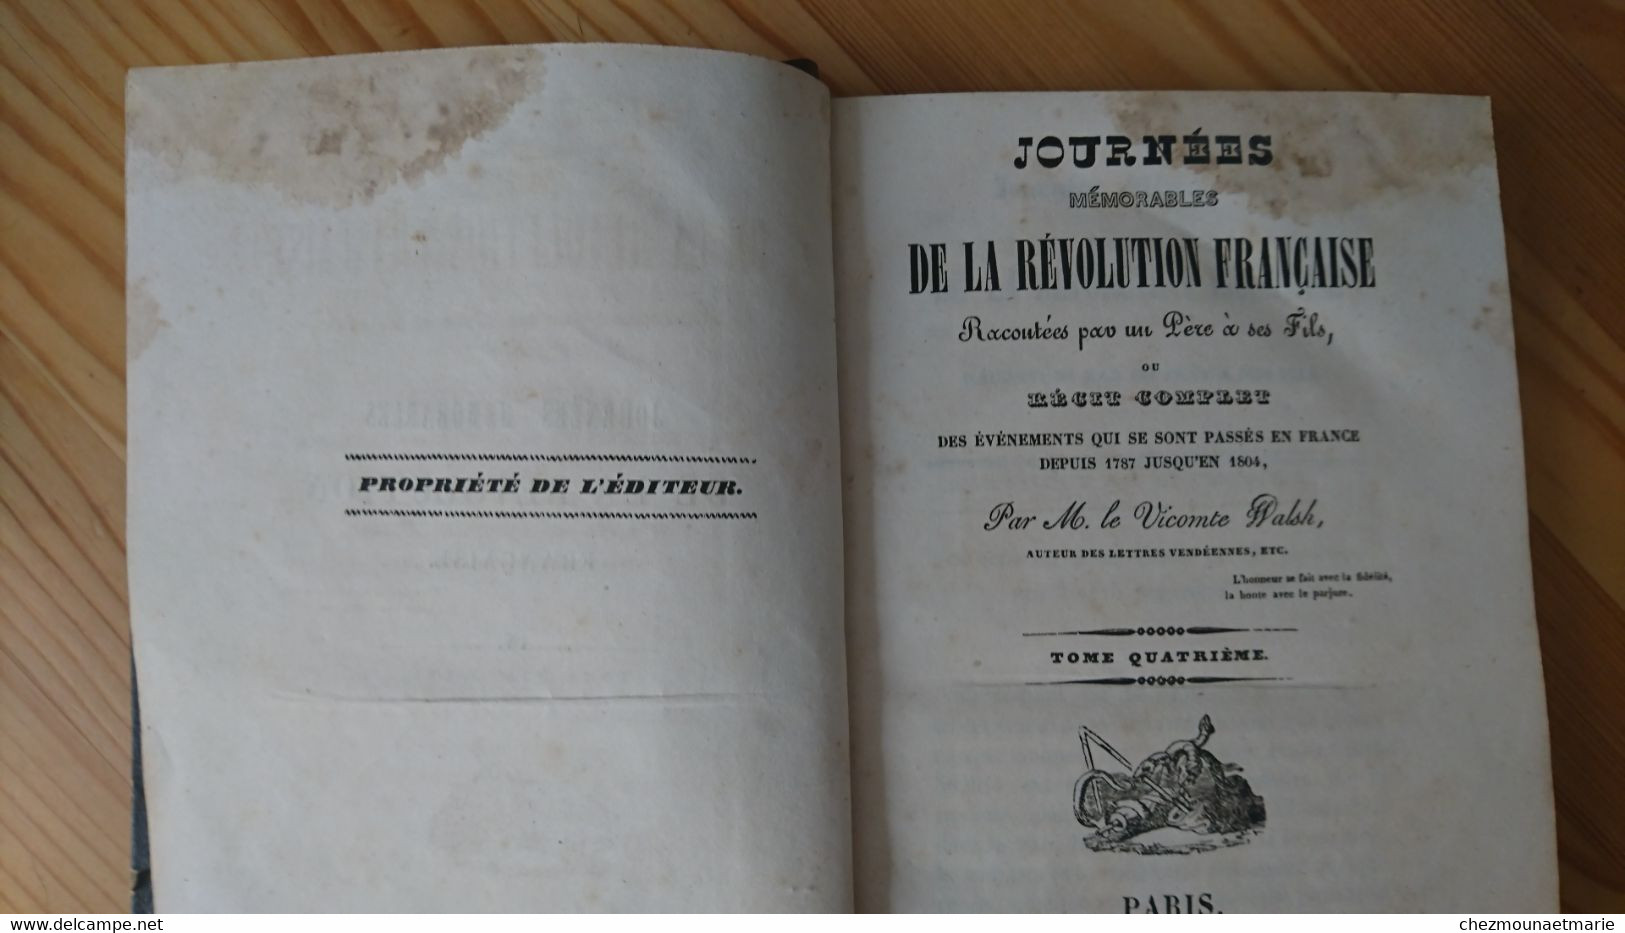 1840 WALSH JOURNEES DE LA REVOLUTION FRANCAISE - SIGNATURE DE M. MORAT CURE A VILLENEUVE LA RIVIERE 66